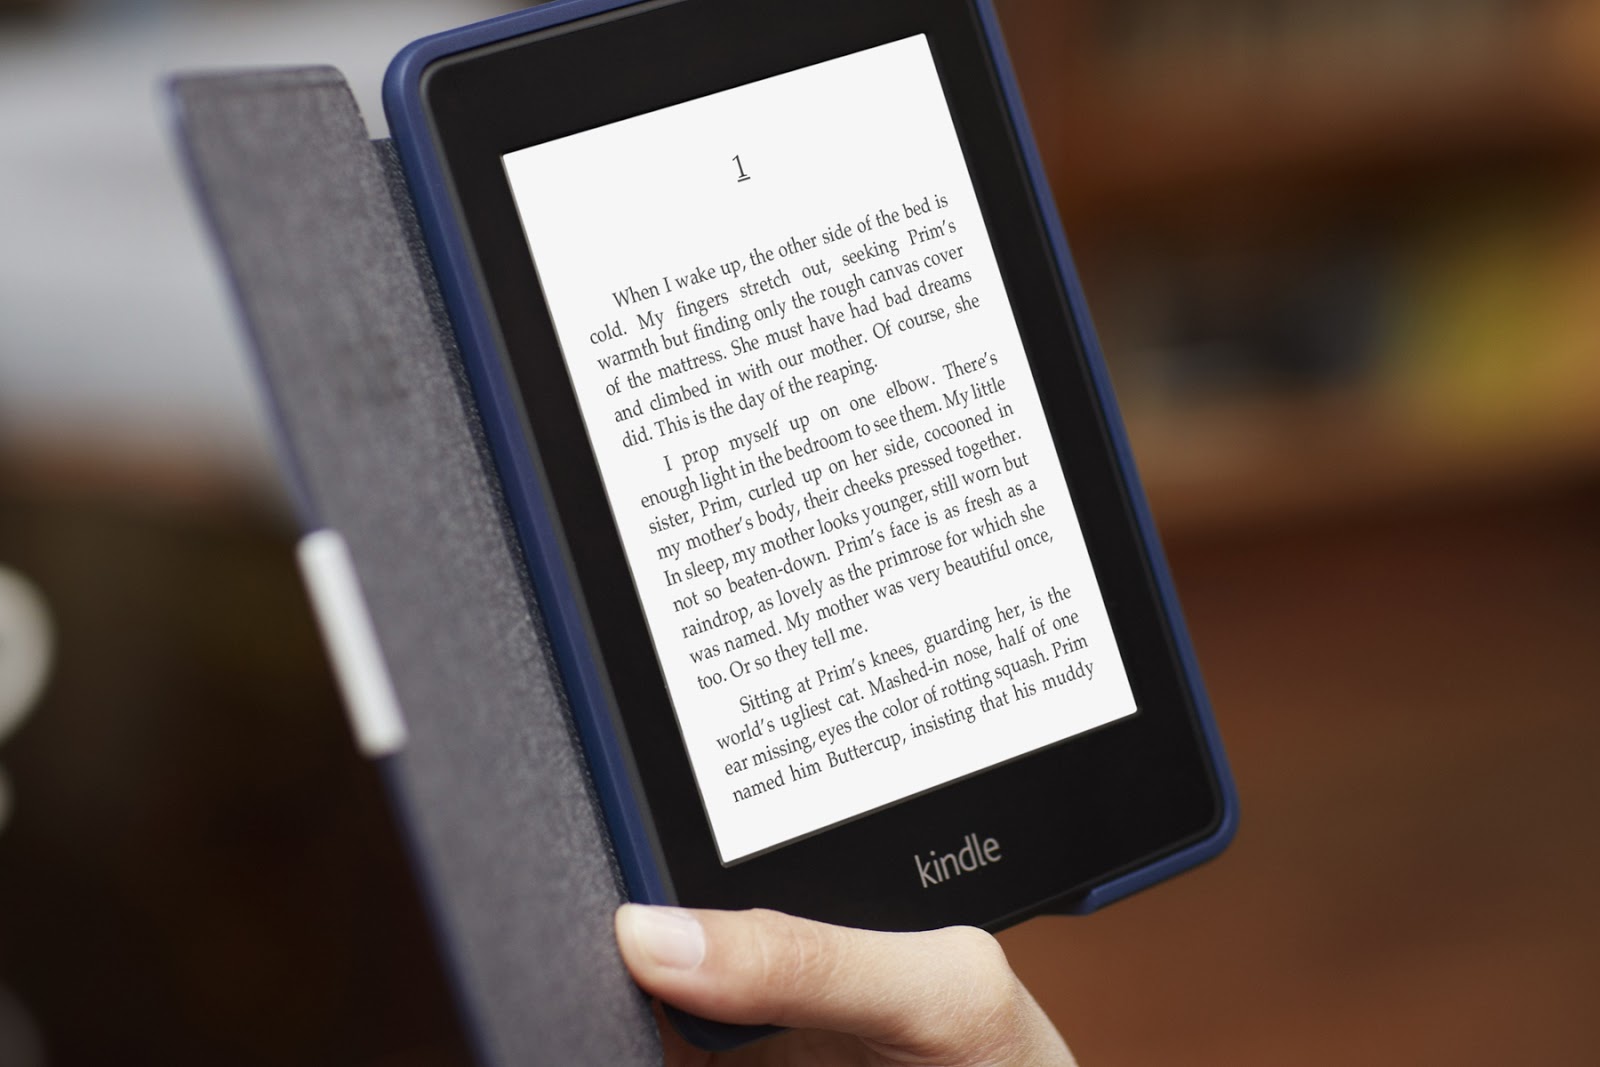 Cómo leer un ebook comprado en  sin un dispositivo Kindle - Ibuks de  Papel